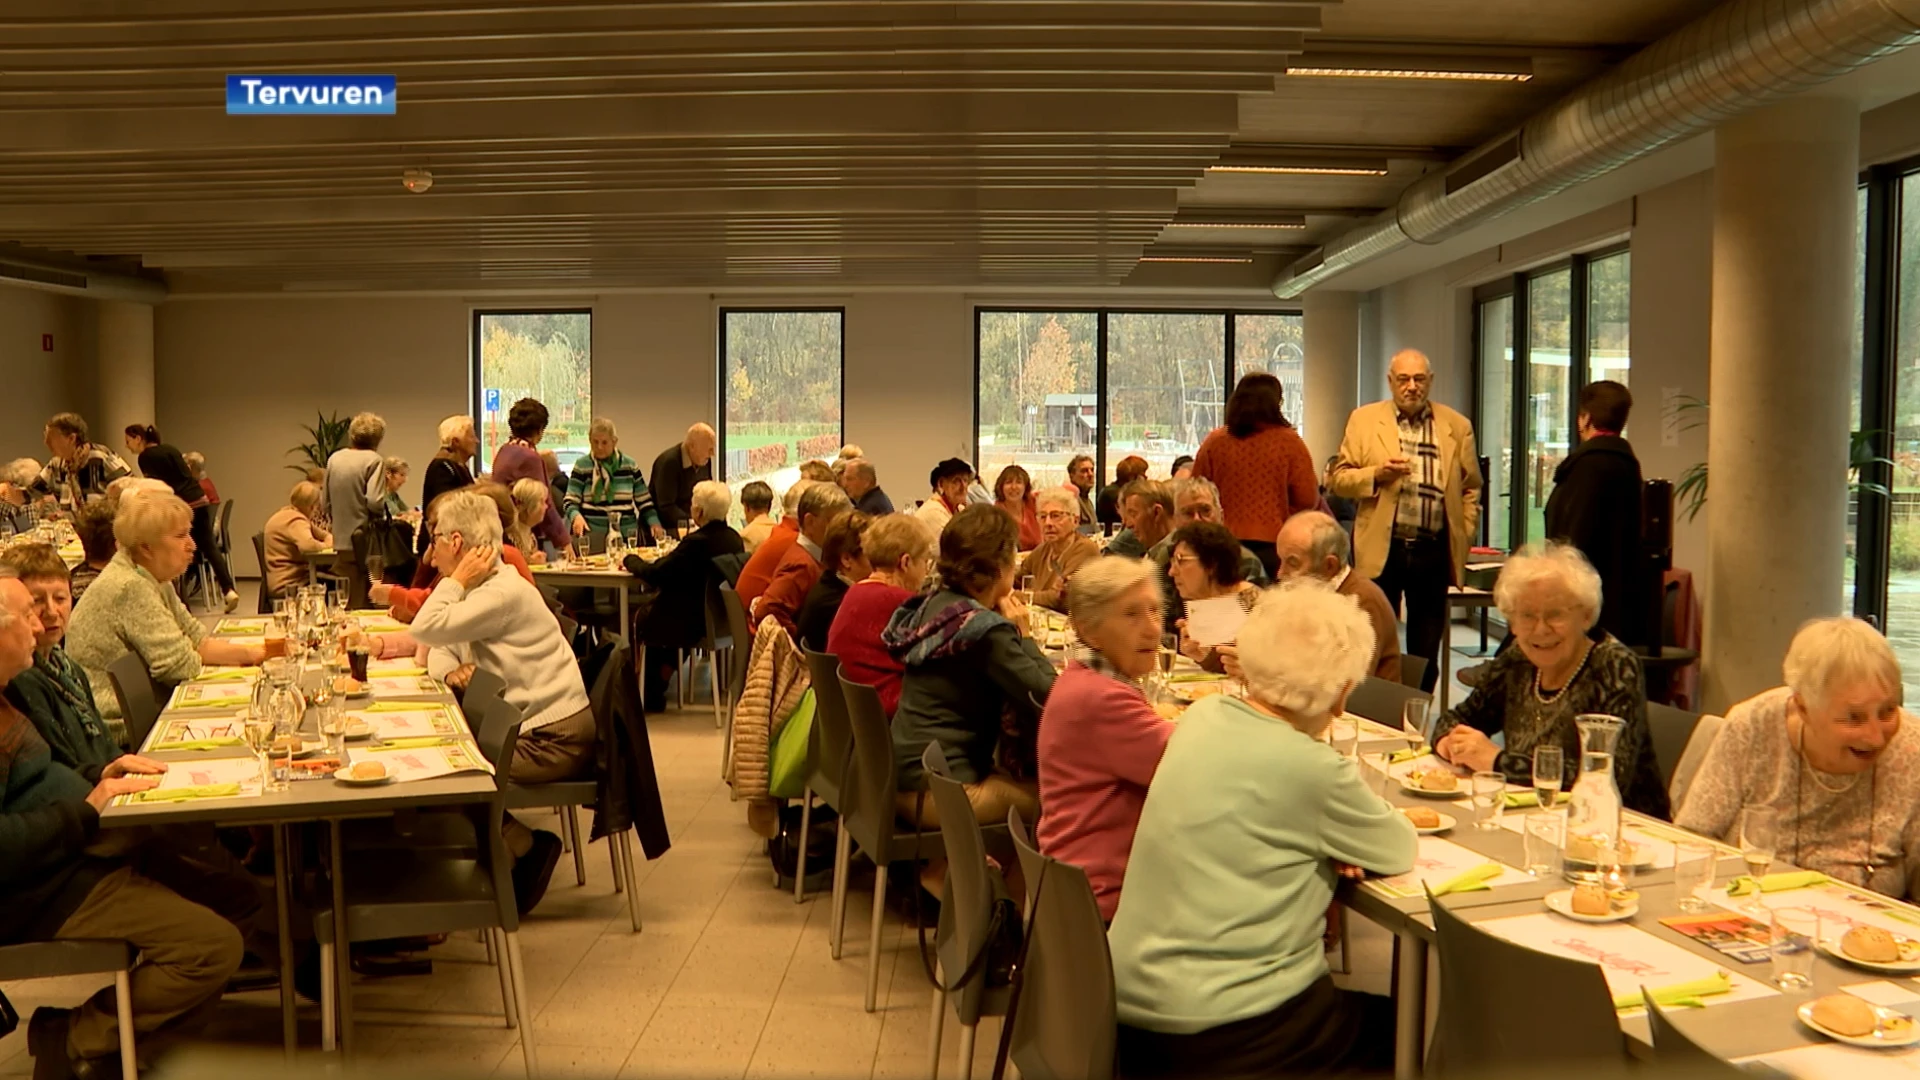 Eerste dorpsrestaurant in Tervuren is een succes: "We willen mensen samenbrengen"